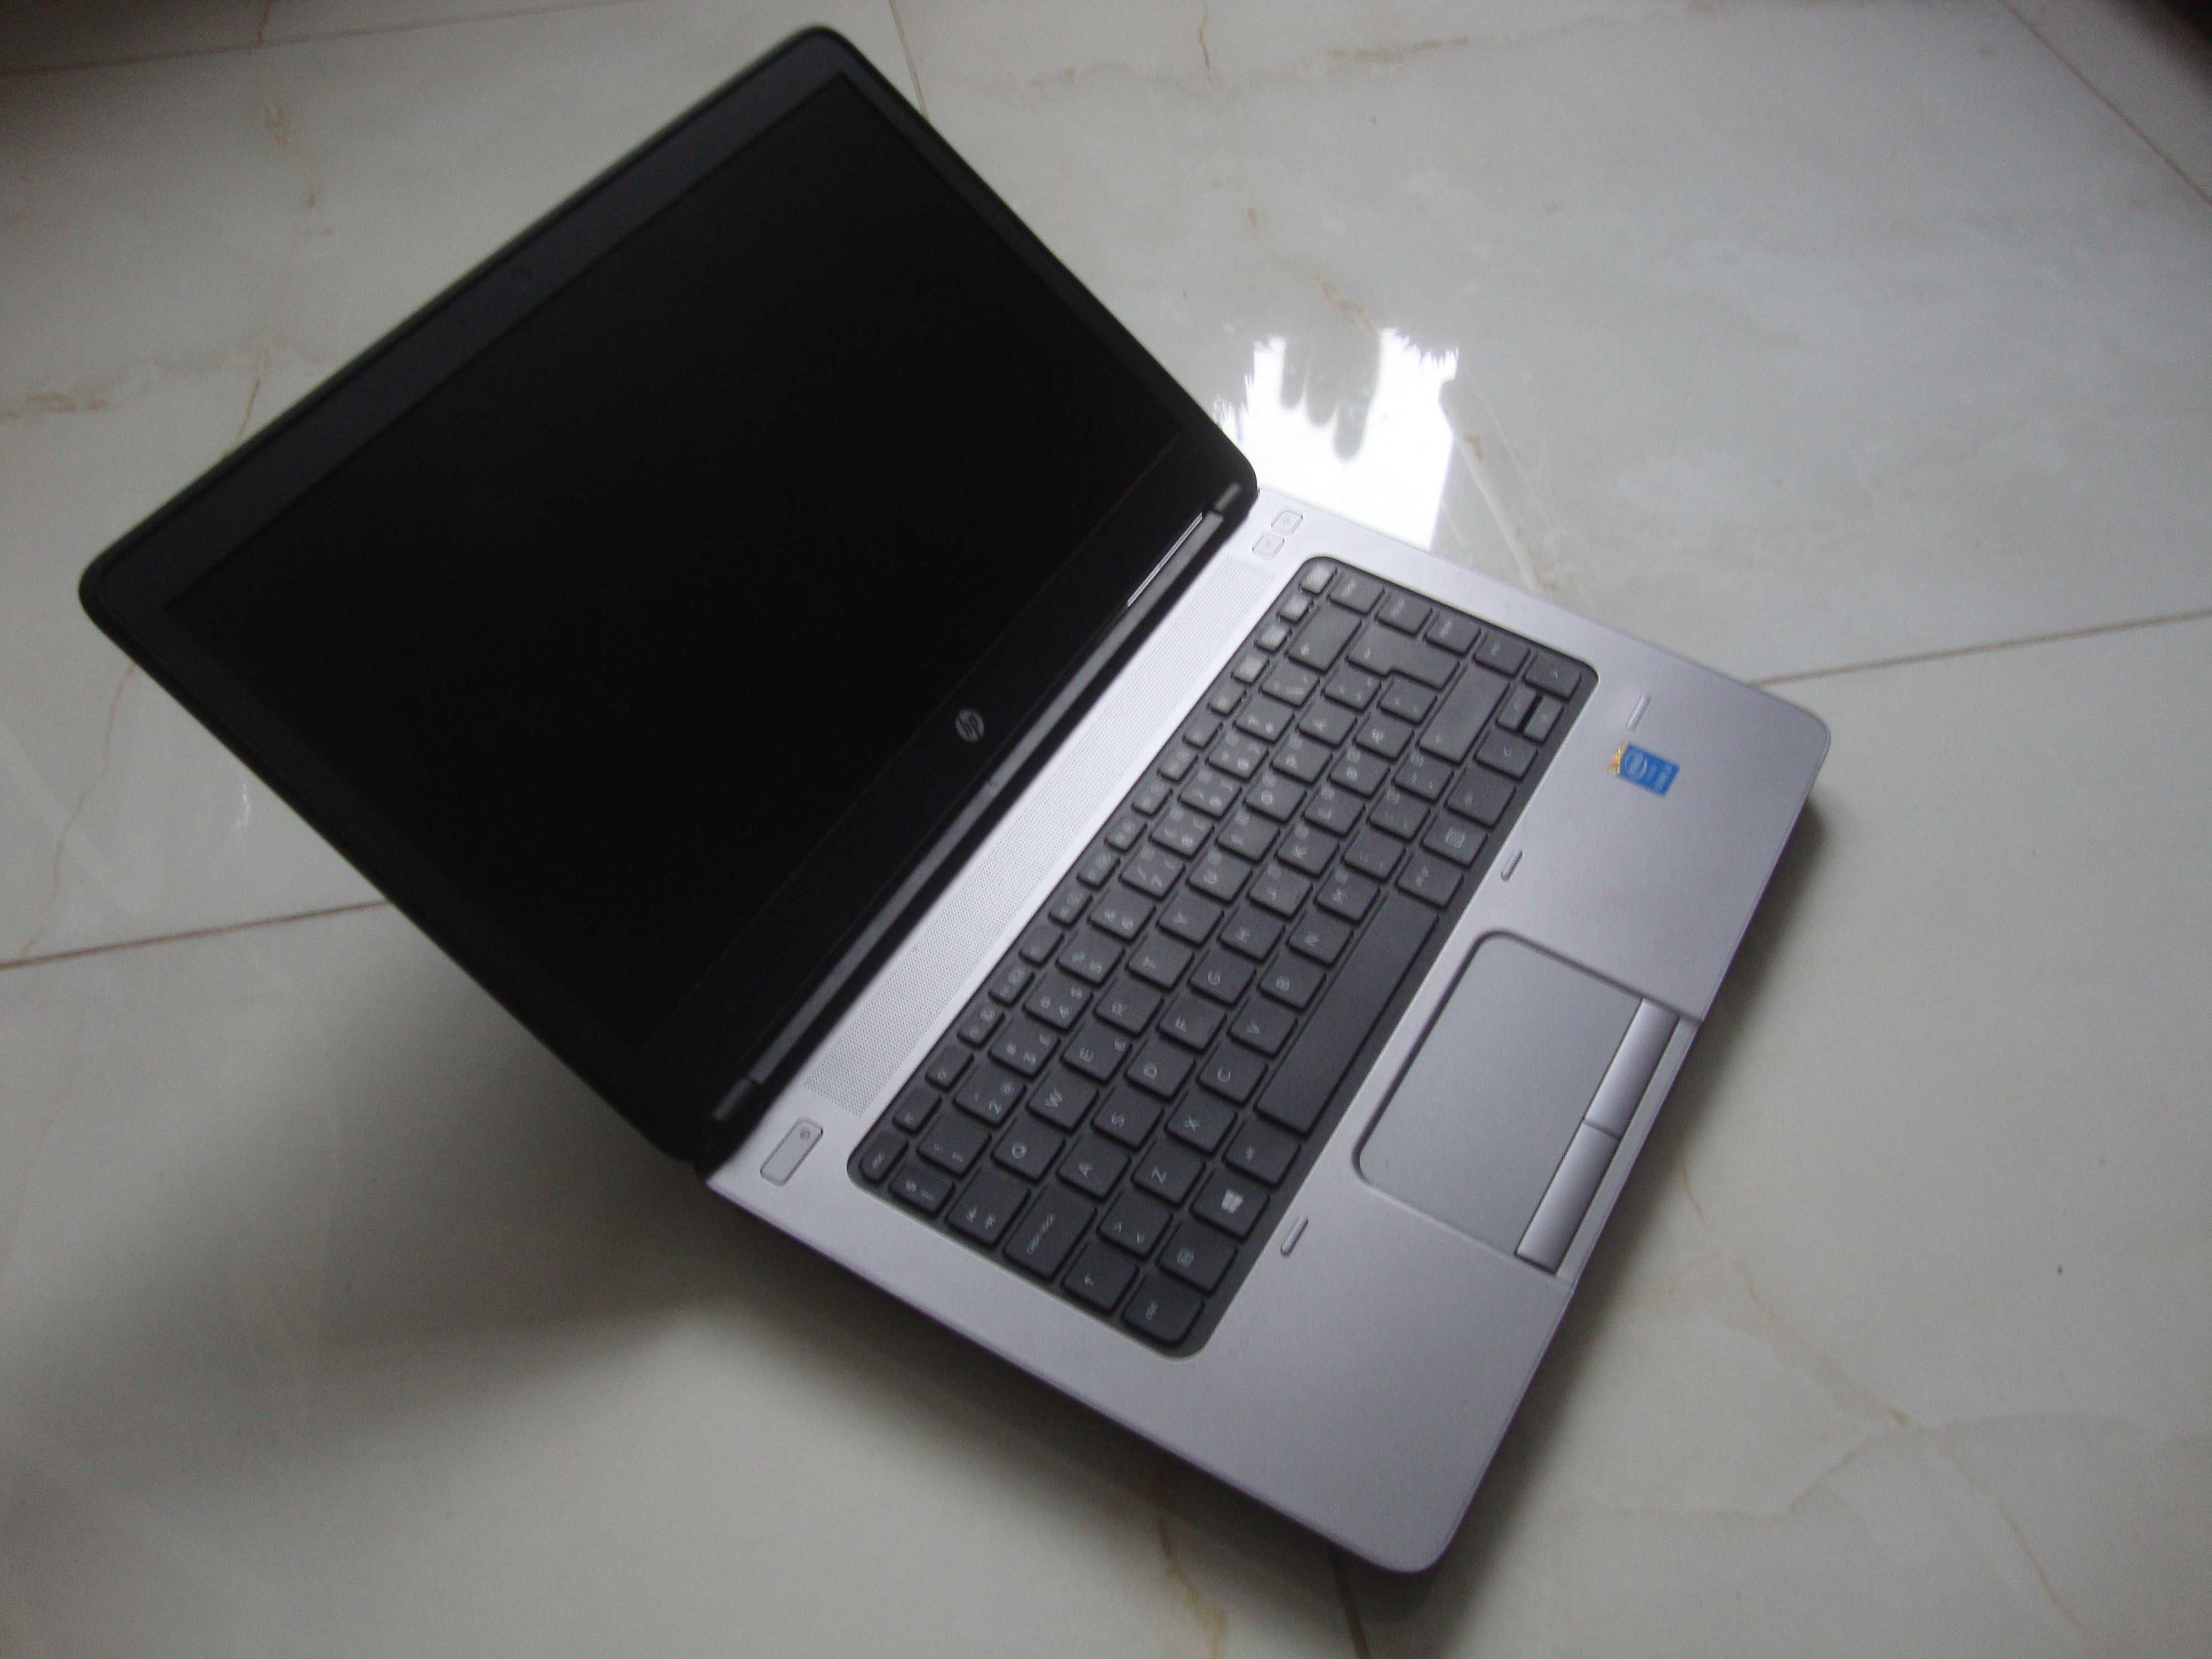 HP ProBook 640 G1 i3-4000M/4gb/320gb Bdb Stan Okazja!!!